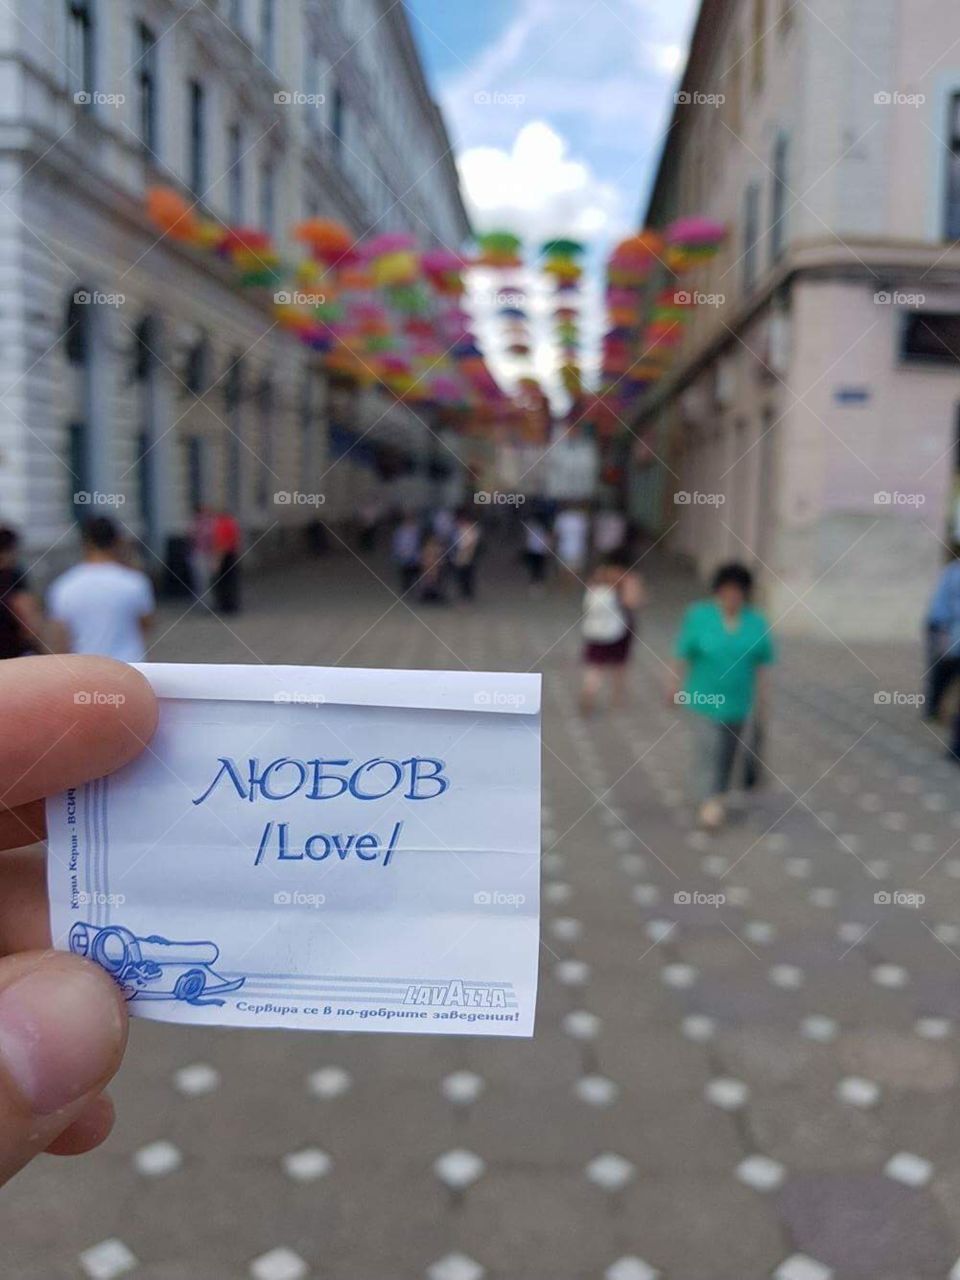 Love in Romania